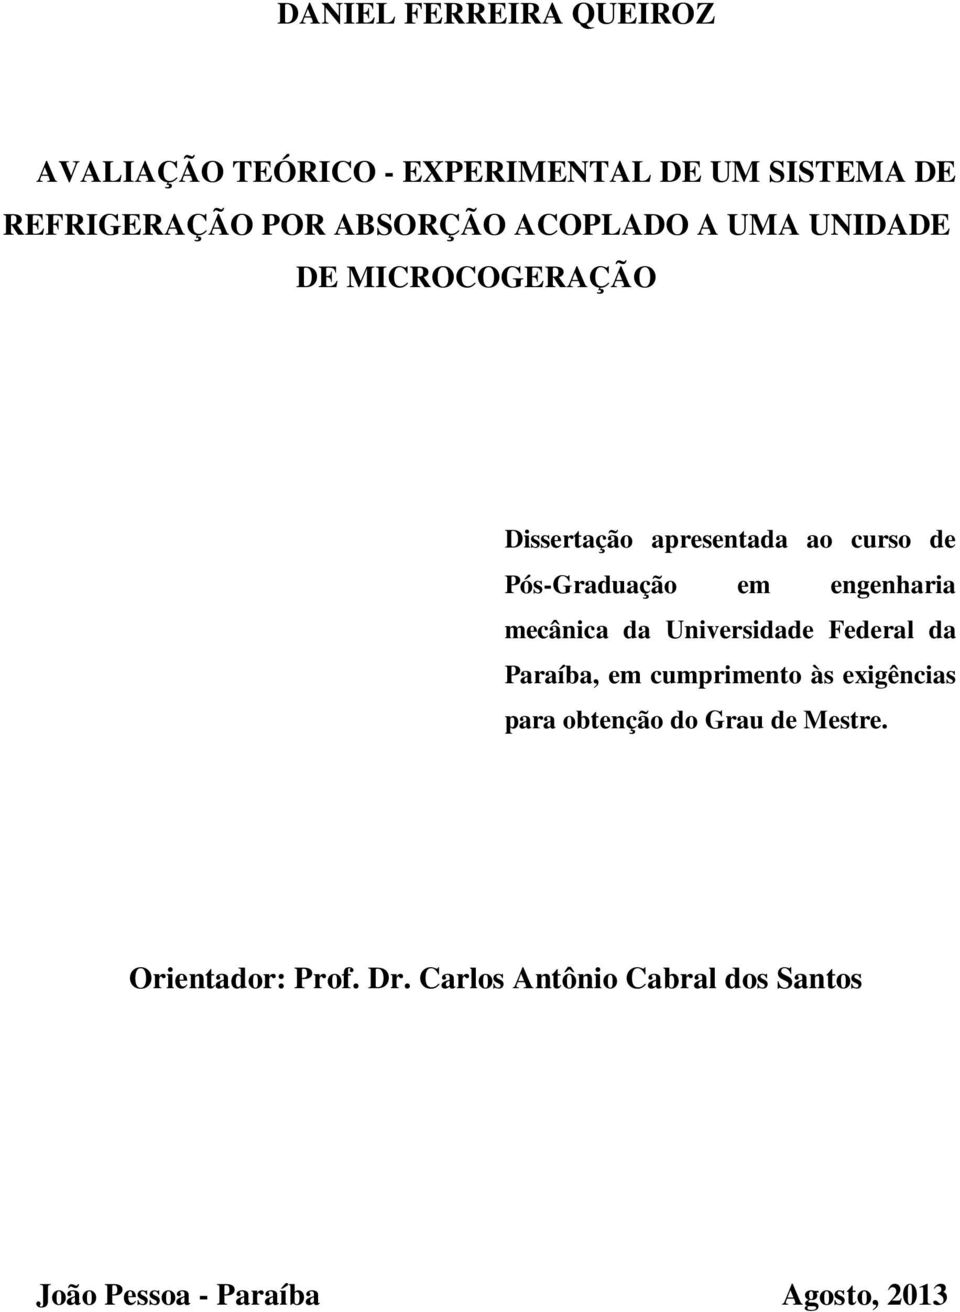 engenharia mecânica da Universidade Federal da Paraíba, em cumprimento às exigências para obtenção